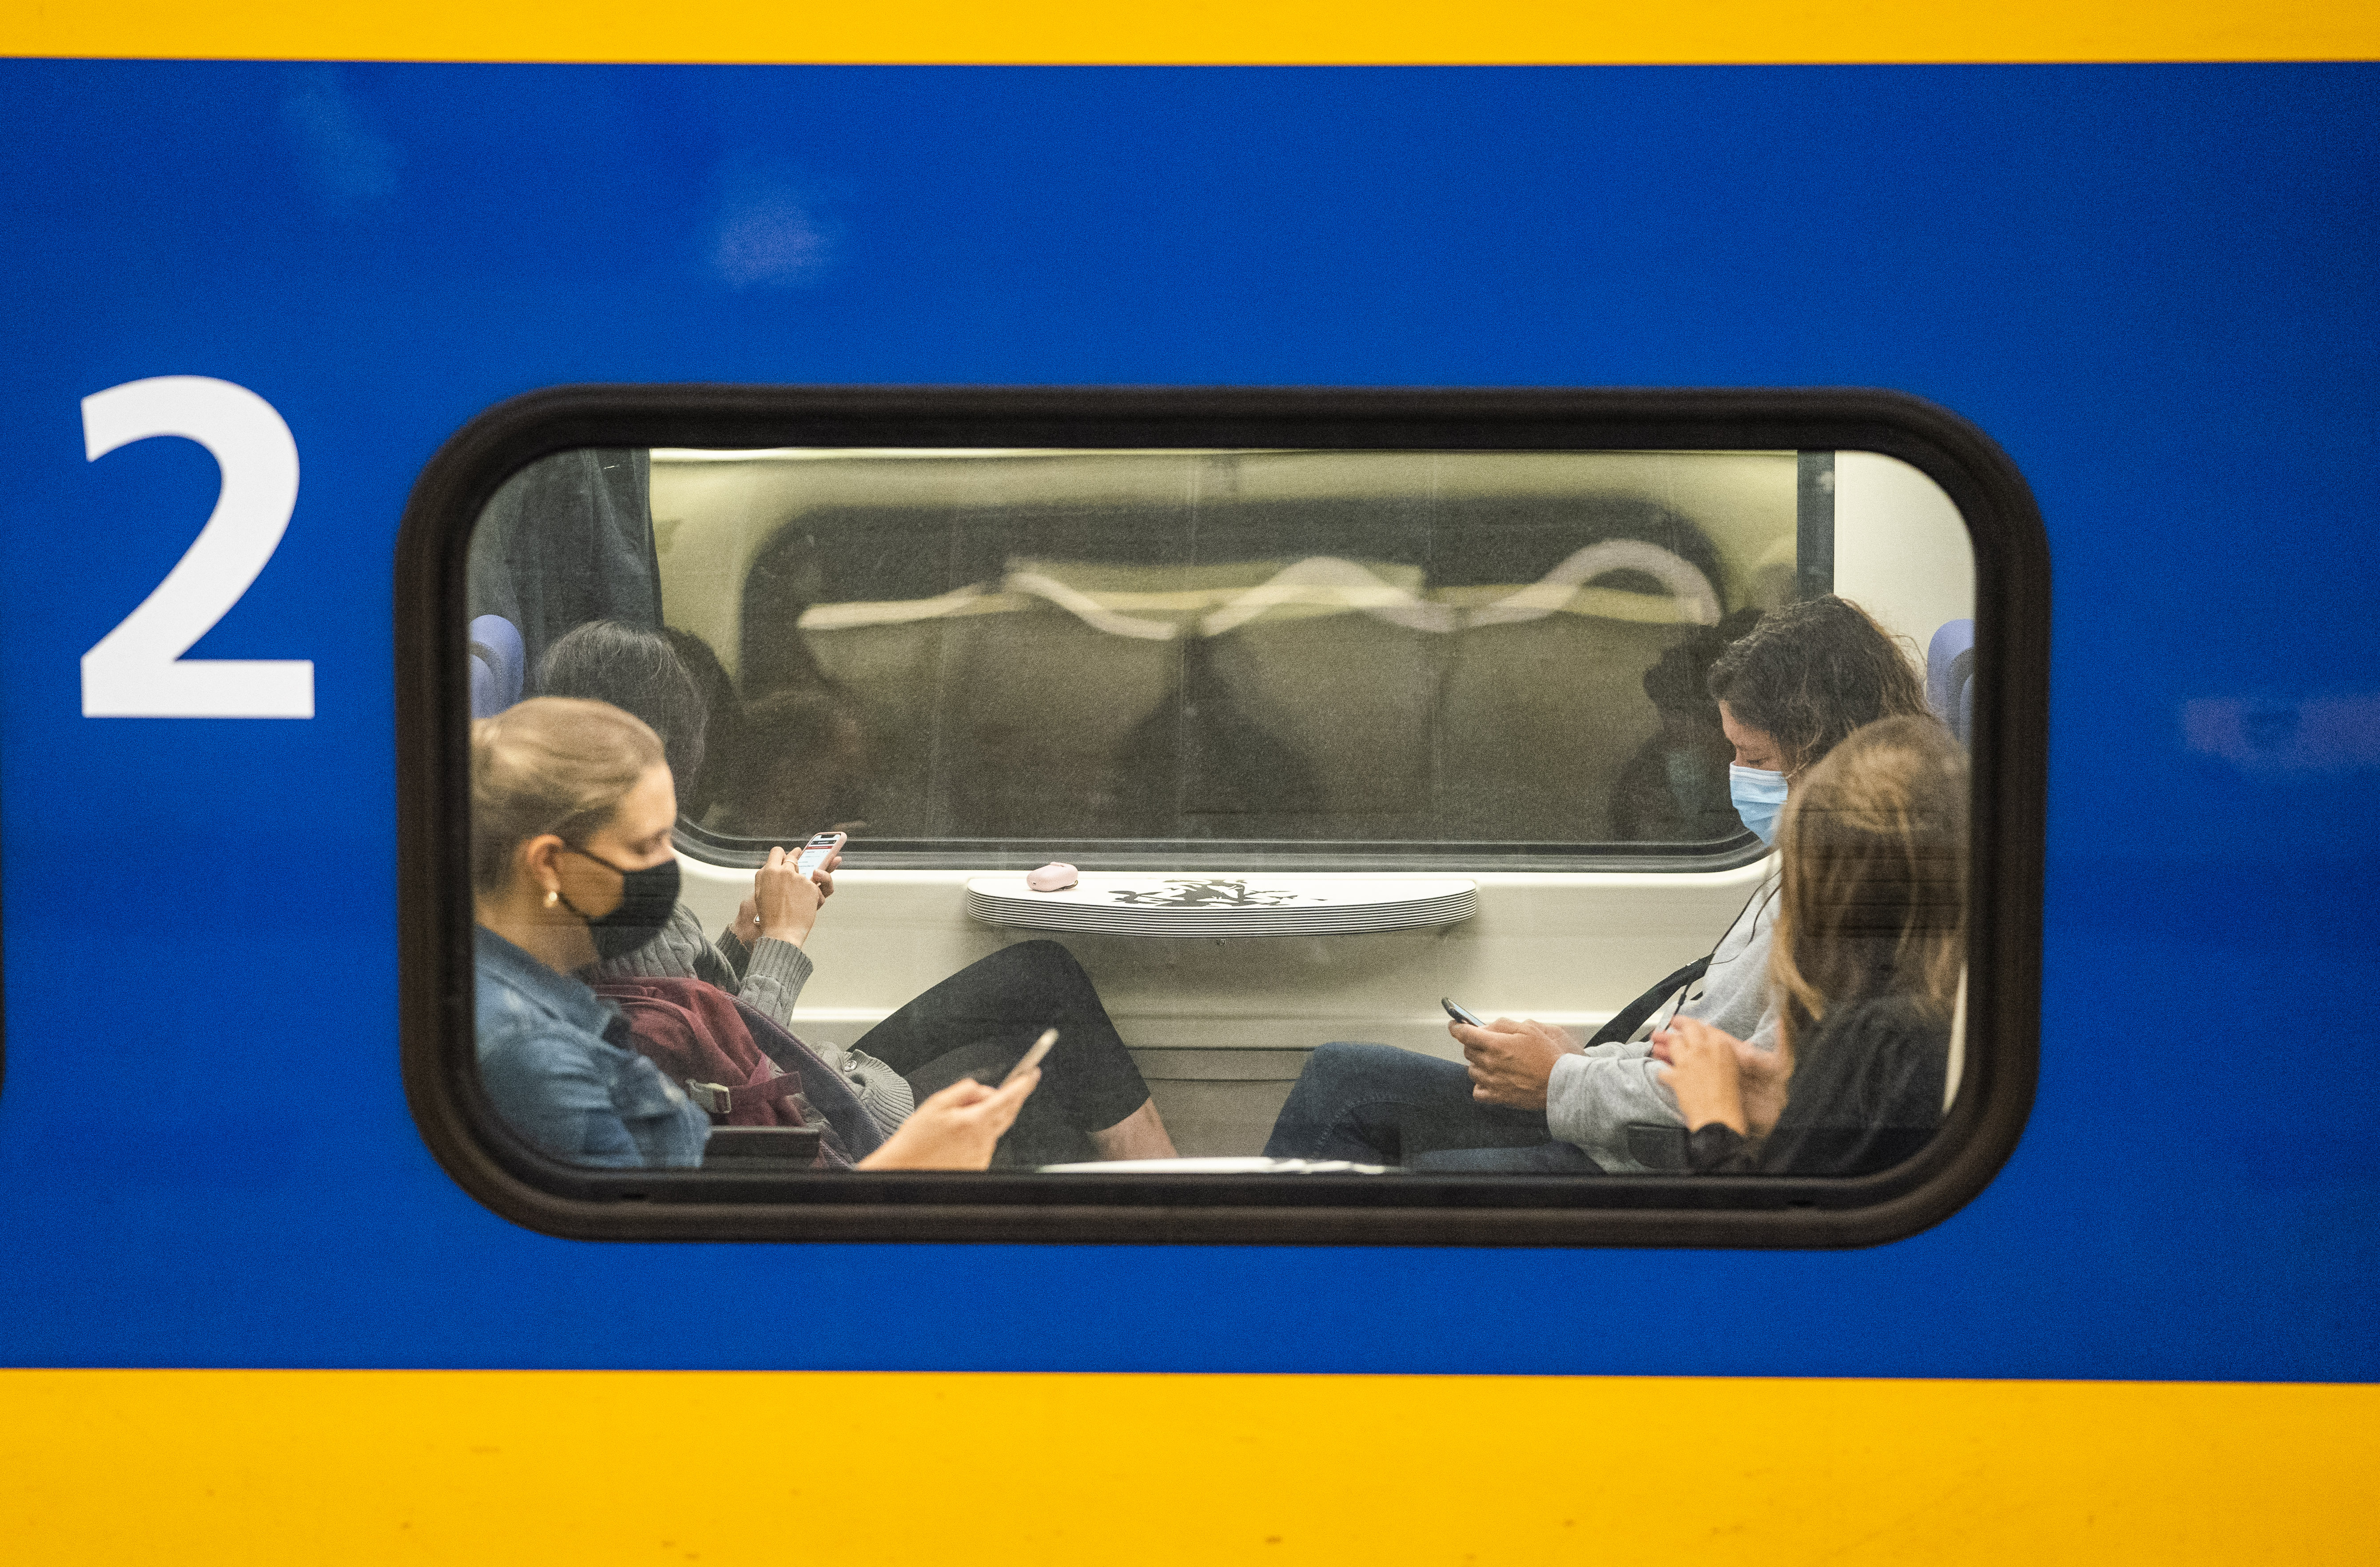 Openbaar vervoer NS trein druk mensen op telefoon